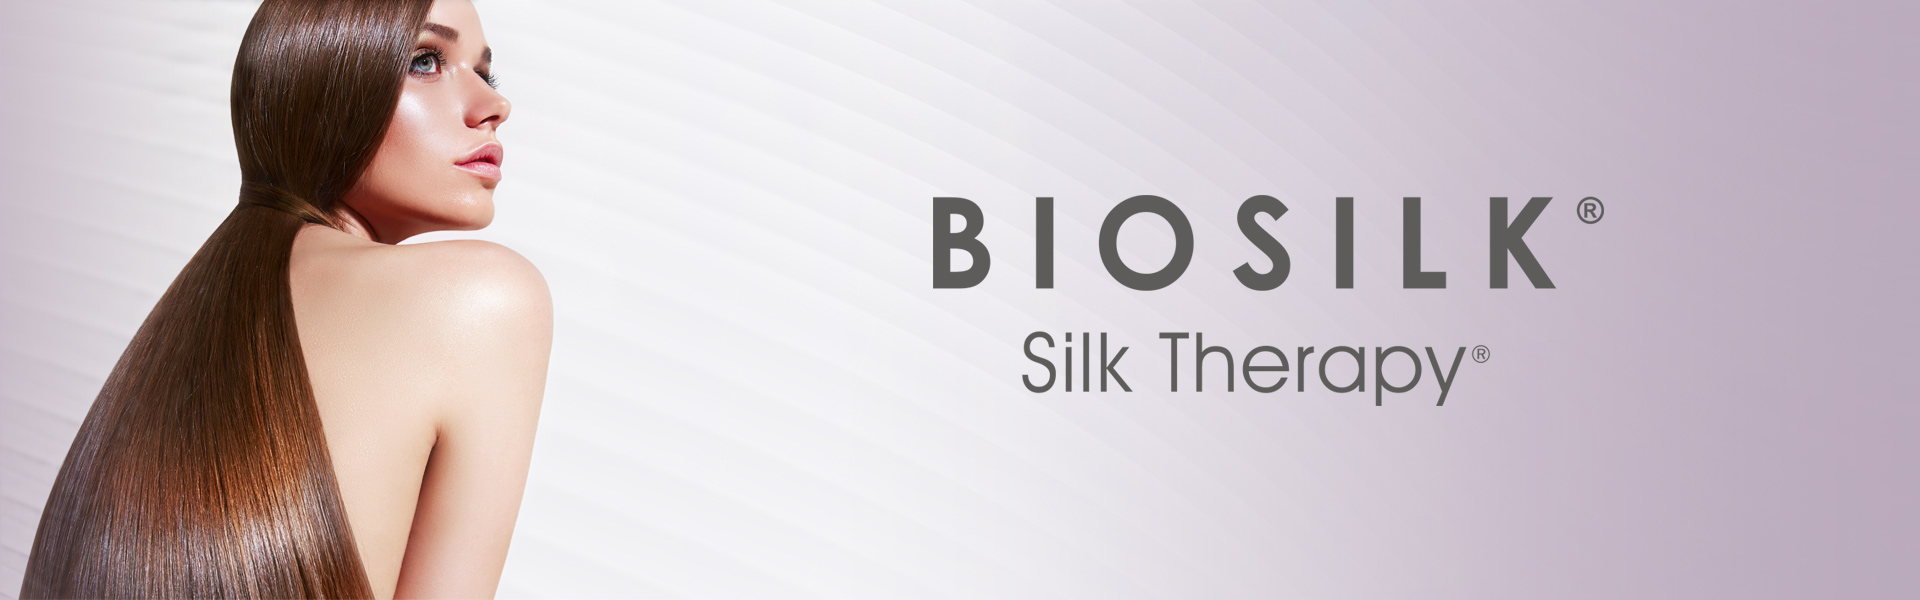 Biosilk Silk Therapy lämpösuojaspray 207 ml 